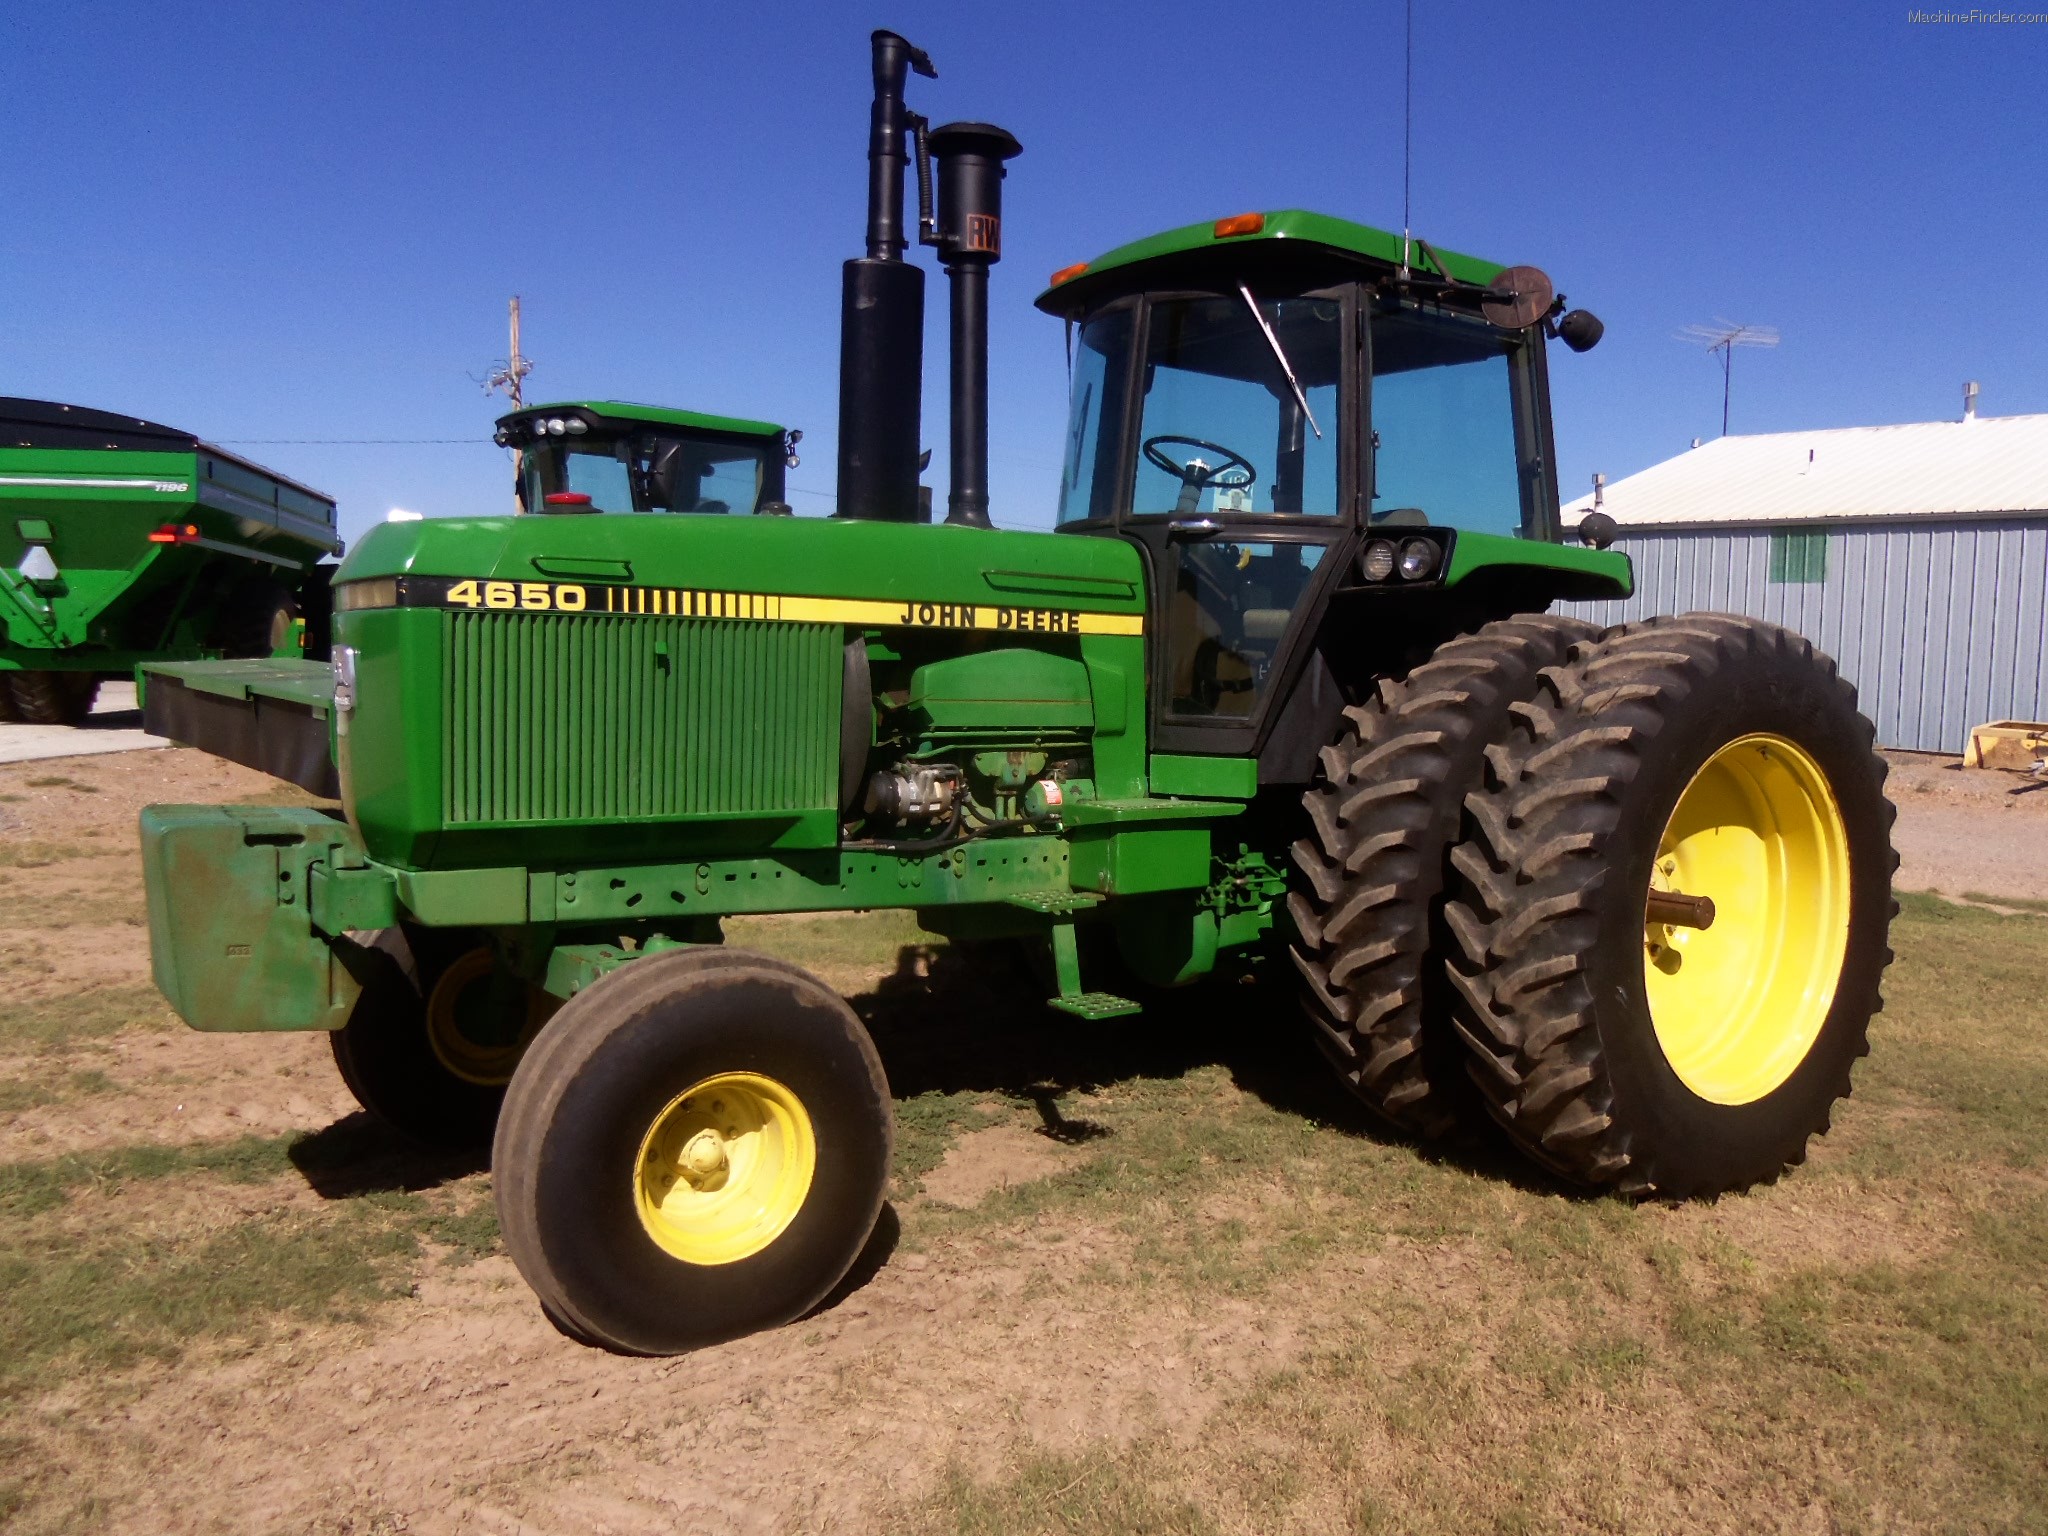 1985 John Deere 4650 Tractors - Row Crop (+100hp) - John Deere ...